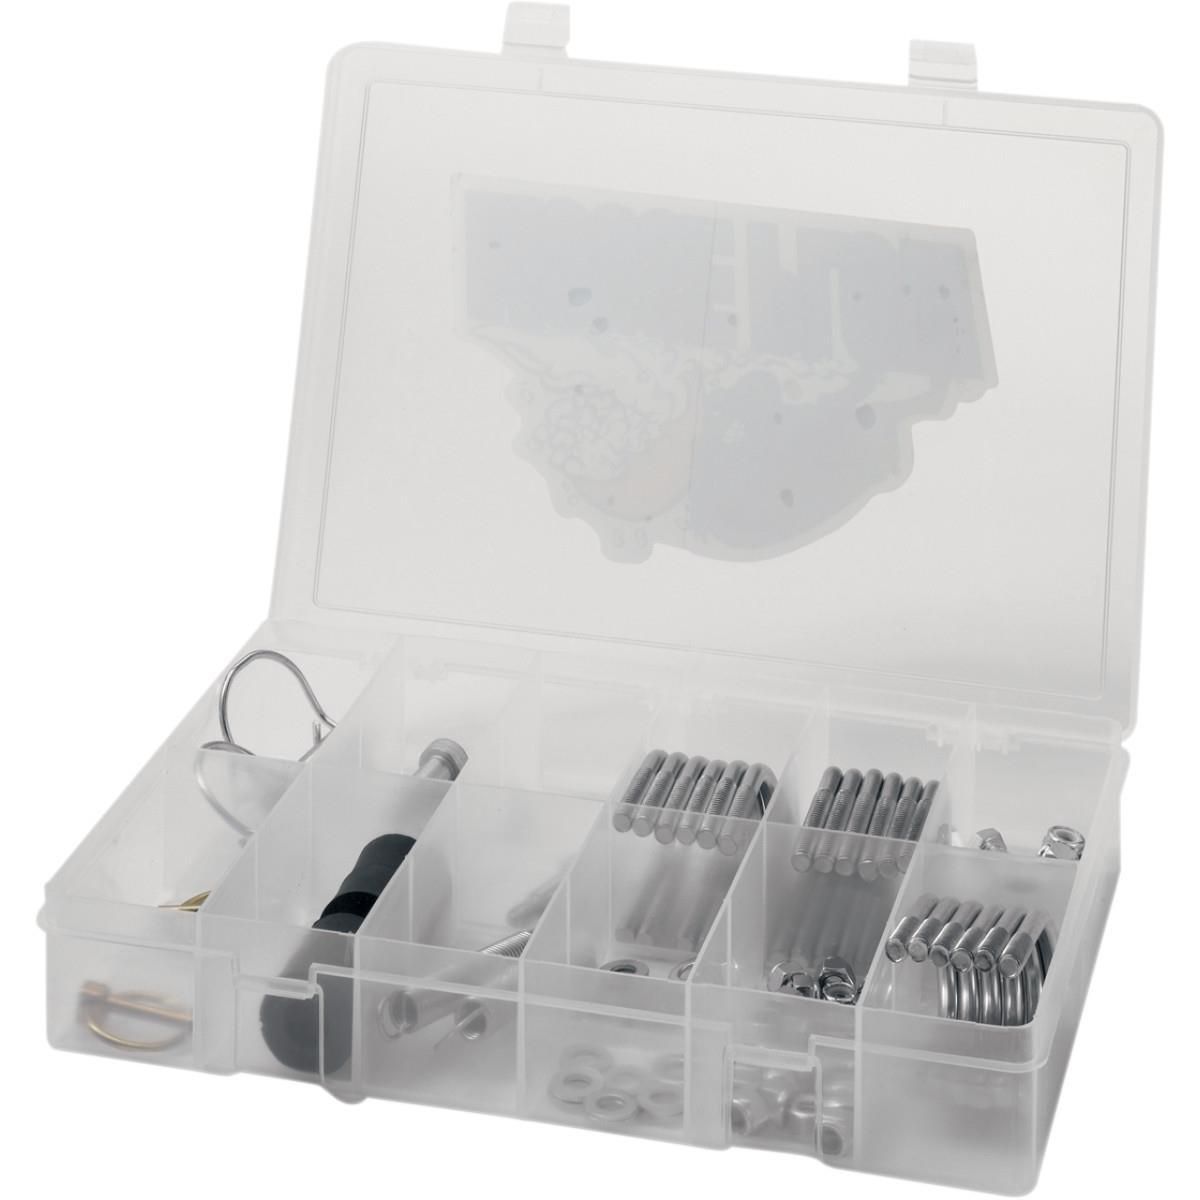 31PJ-MOOSE-UTILI-45010073 Plow Hardware Kit